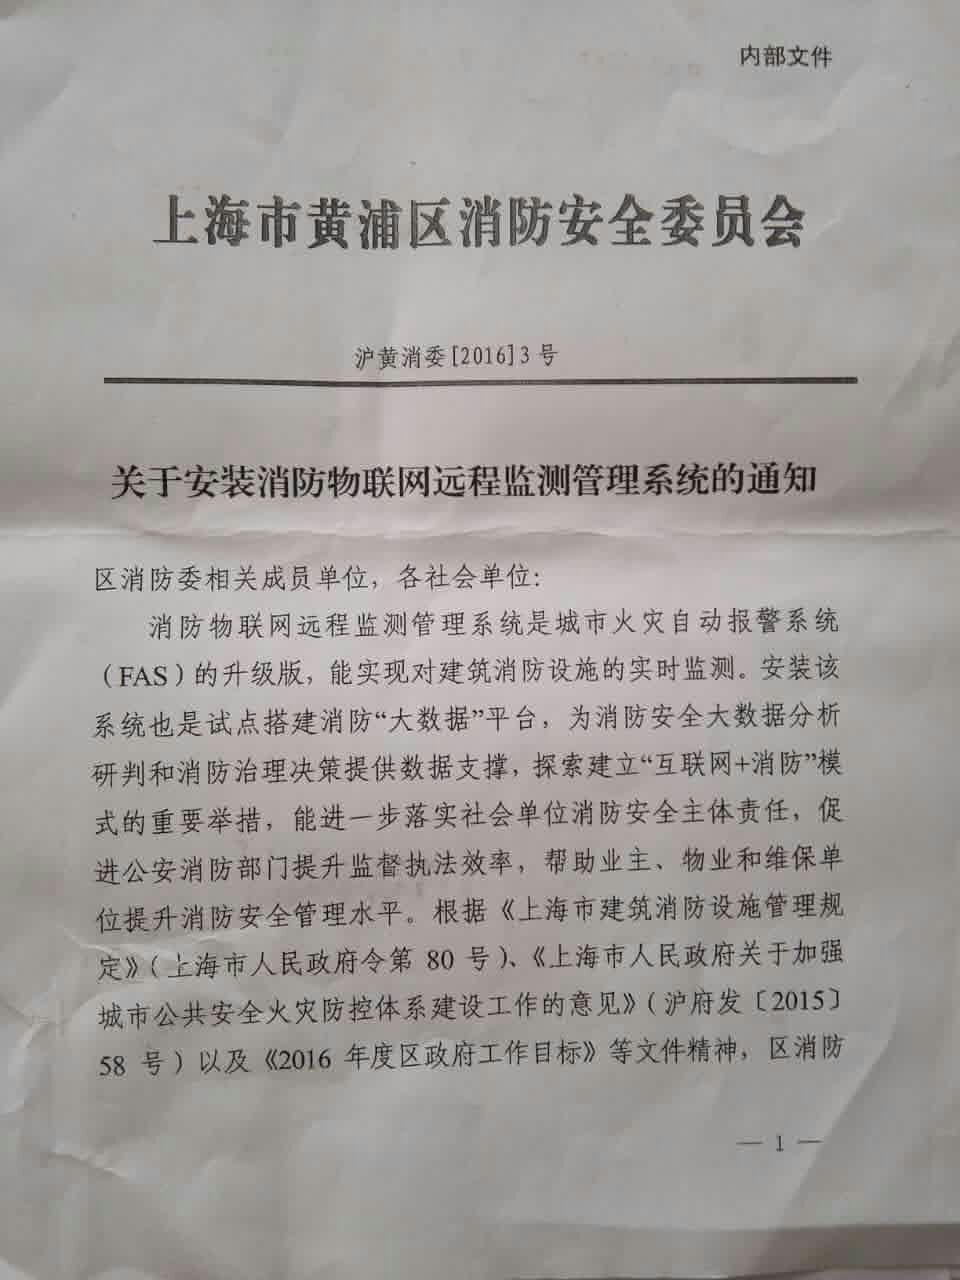 上海市黄浦区关于安装消防远程联网的通知